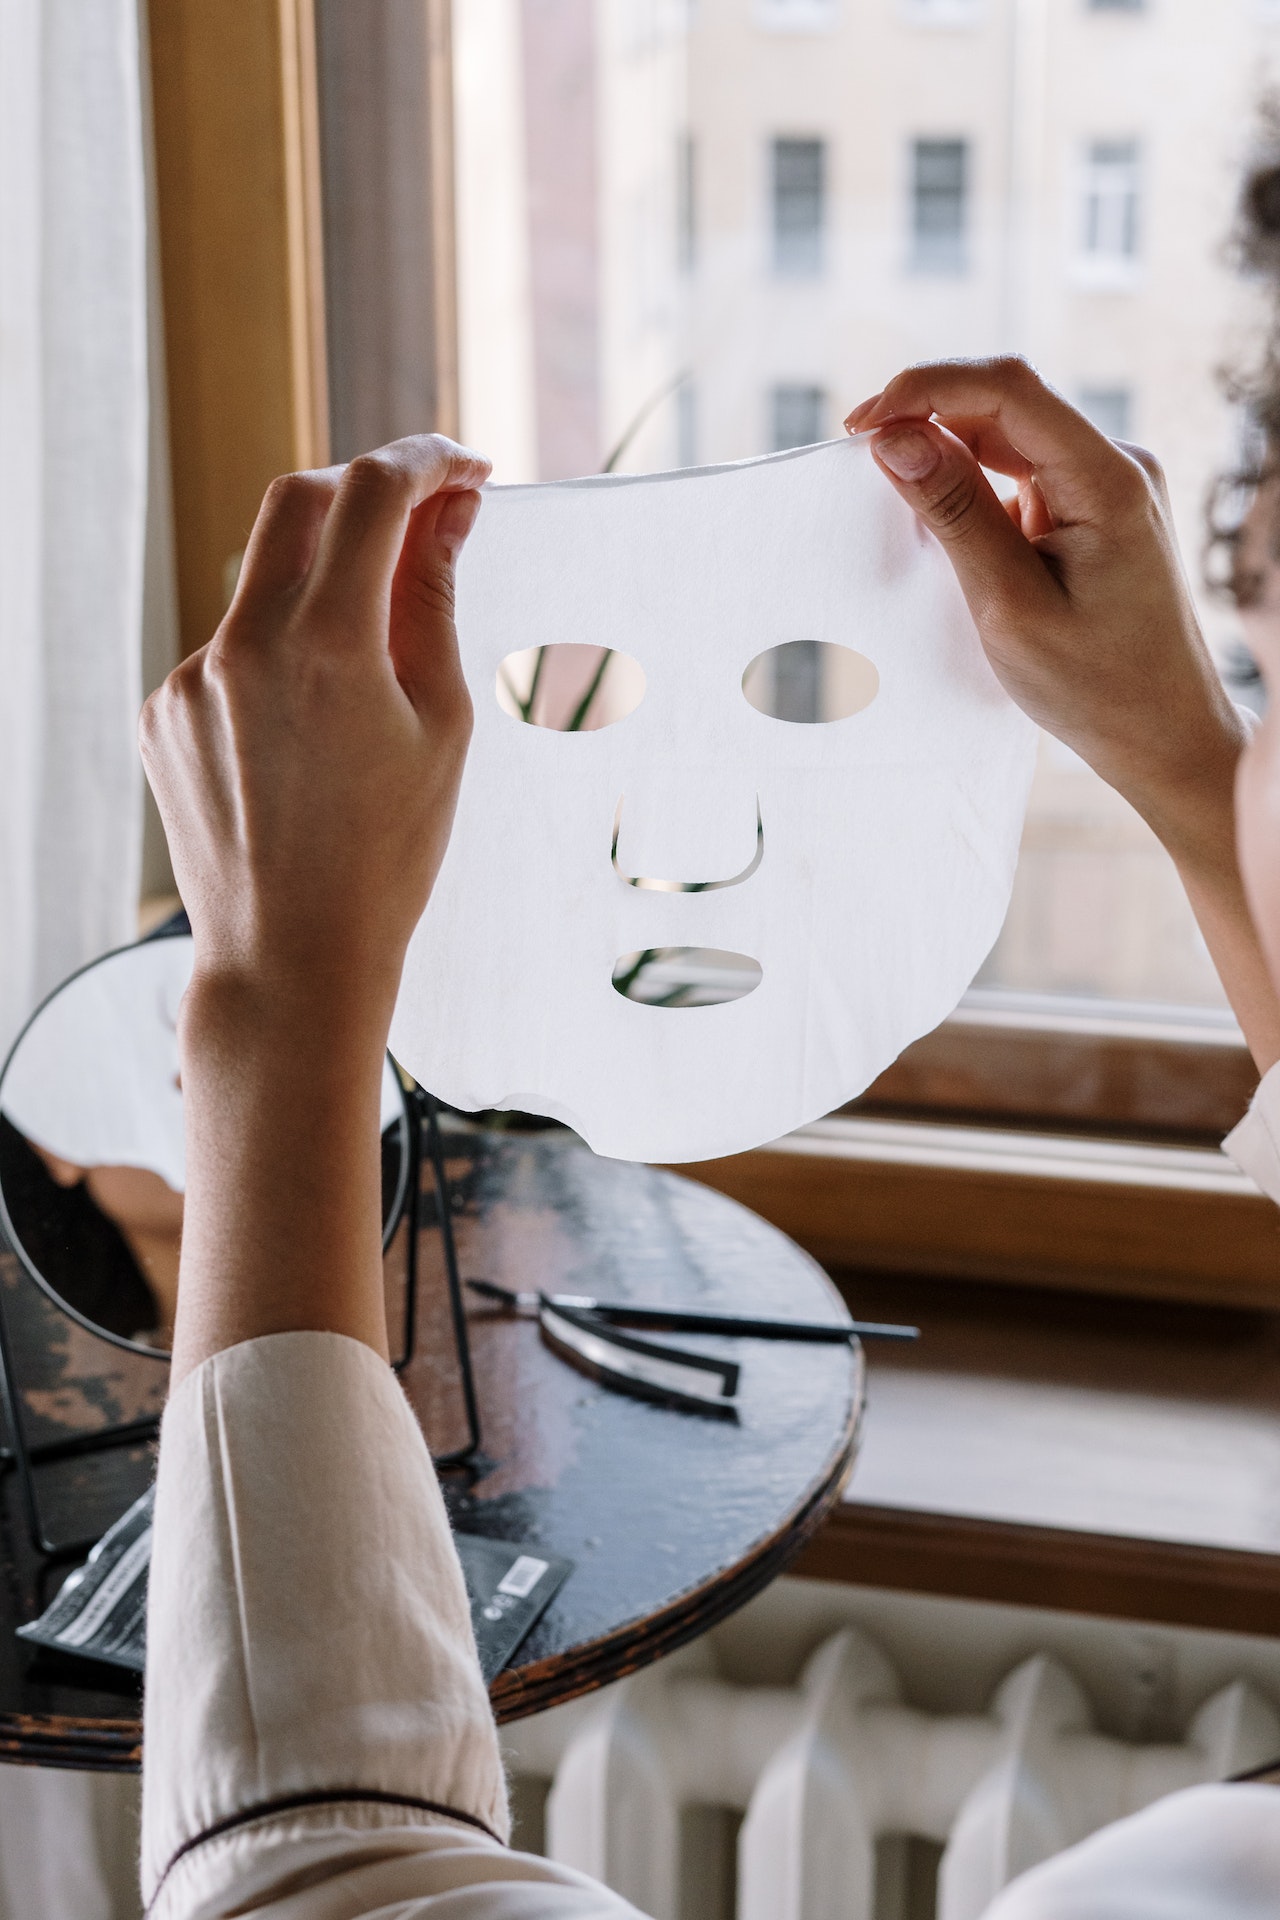 Peel-off μάσκες: Όσα πρέπει να προσέξεις για να δεις τα καλύτερά τους αποτελέσματα